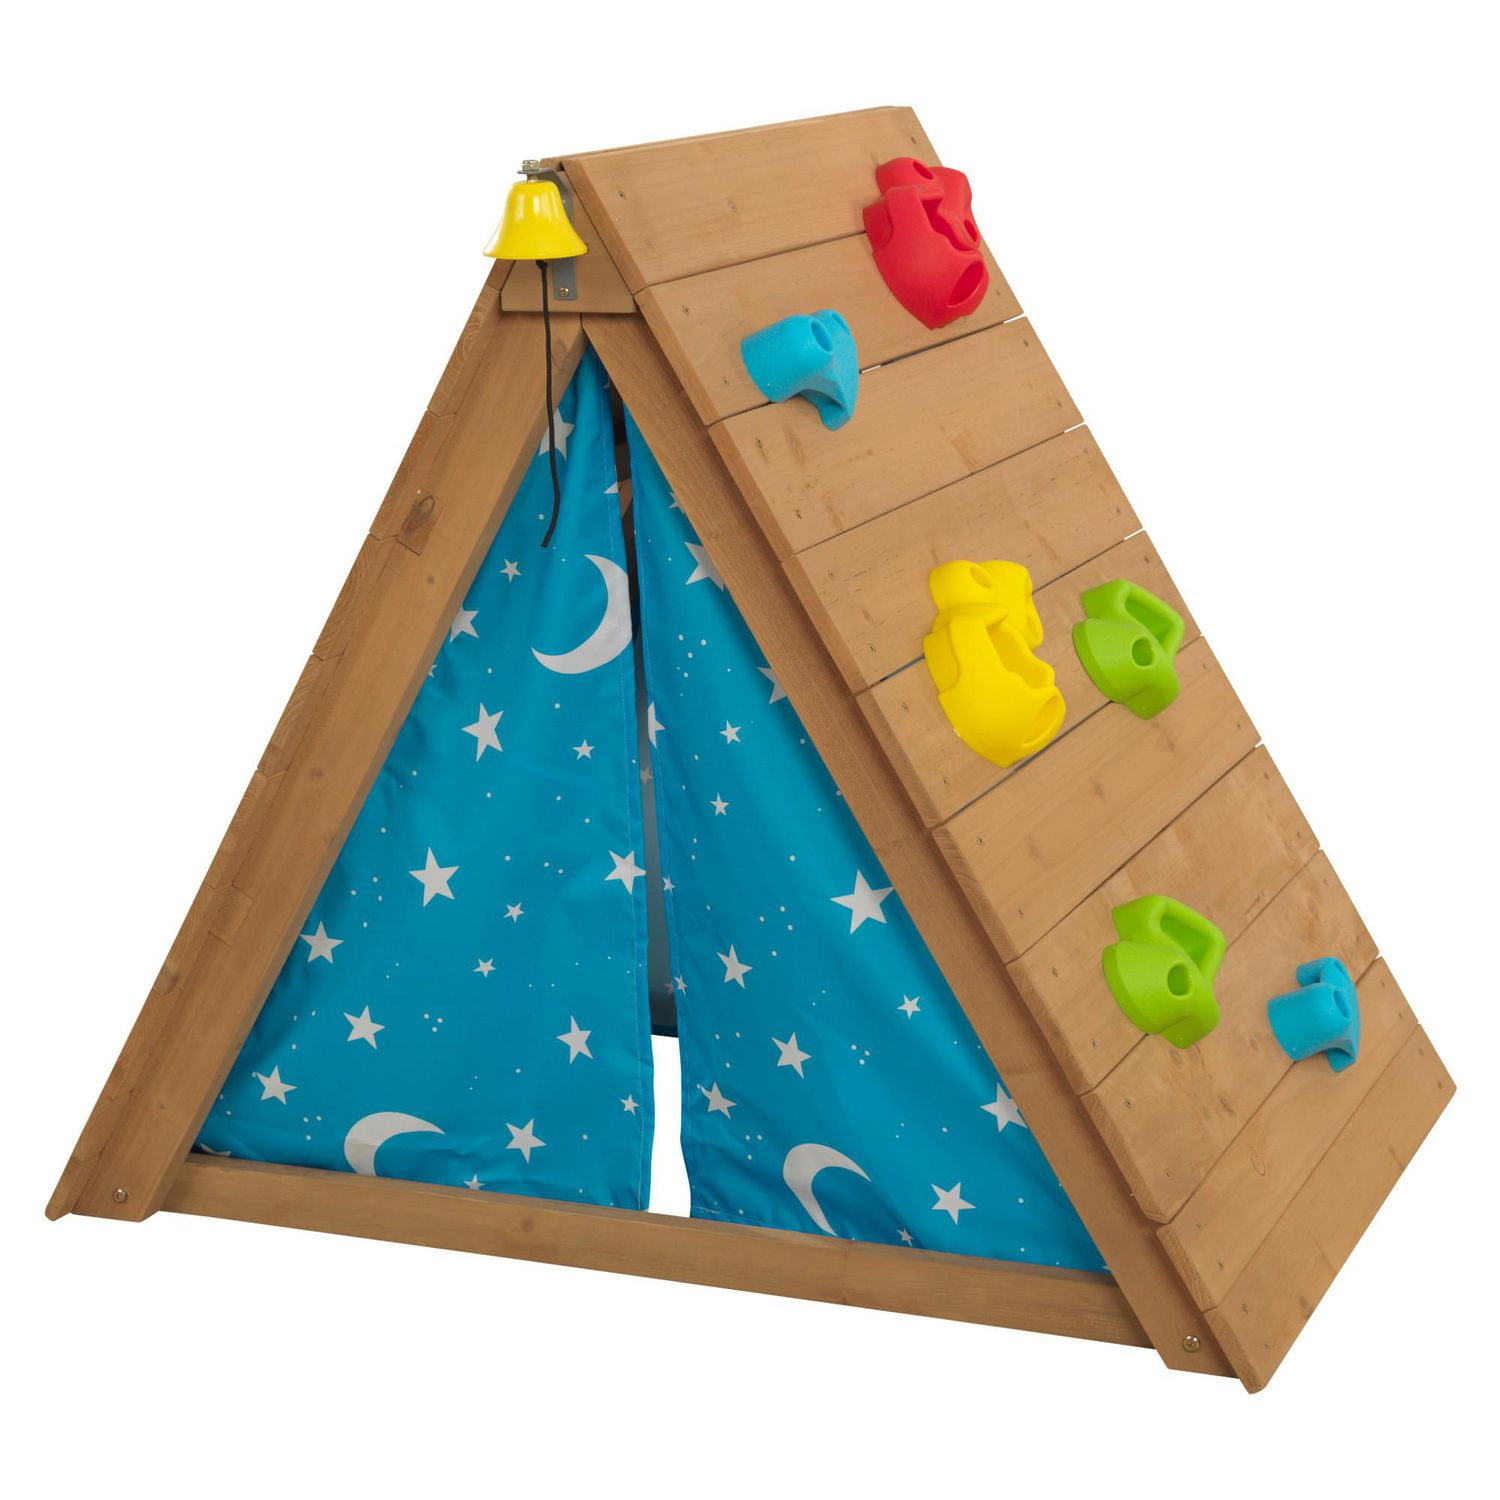 KidKraft A-Frame Wooden Hideaway & Climber Toddler Climbing Toy